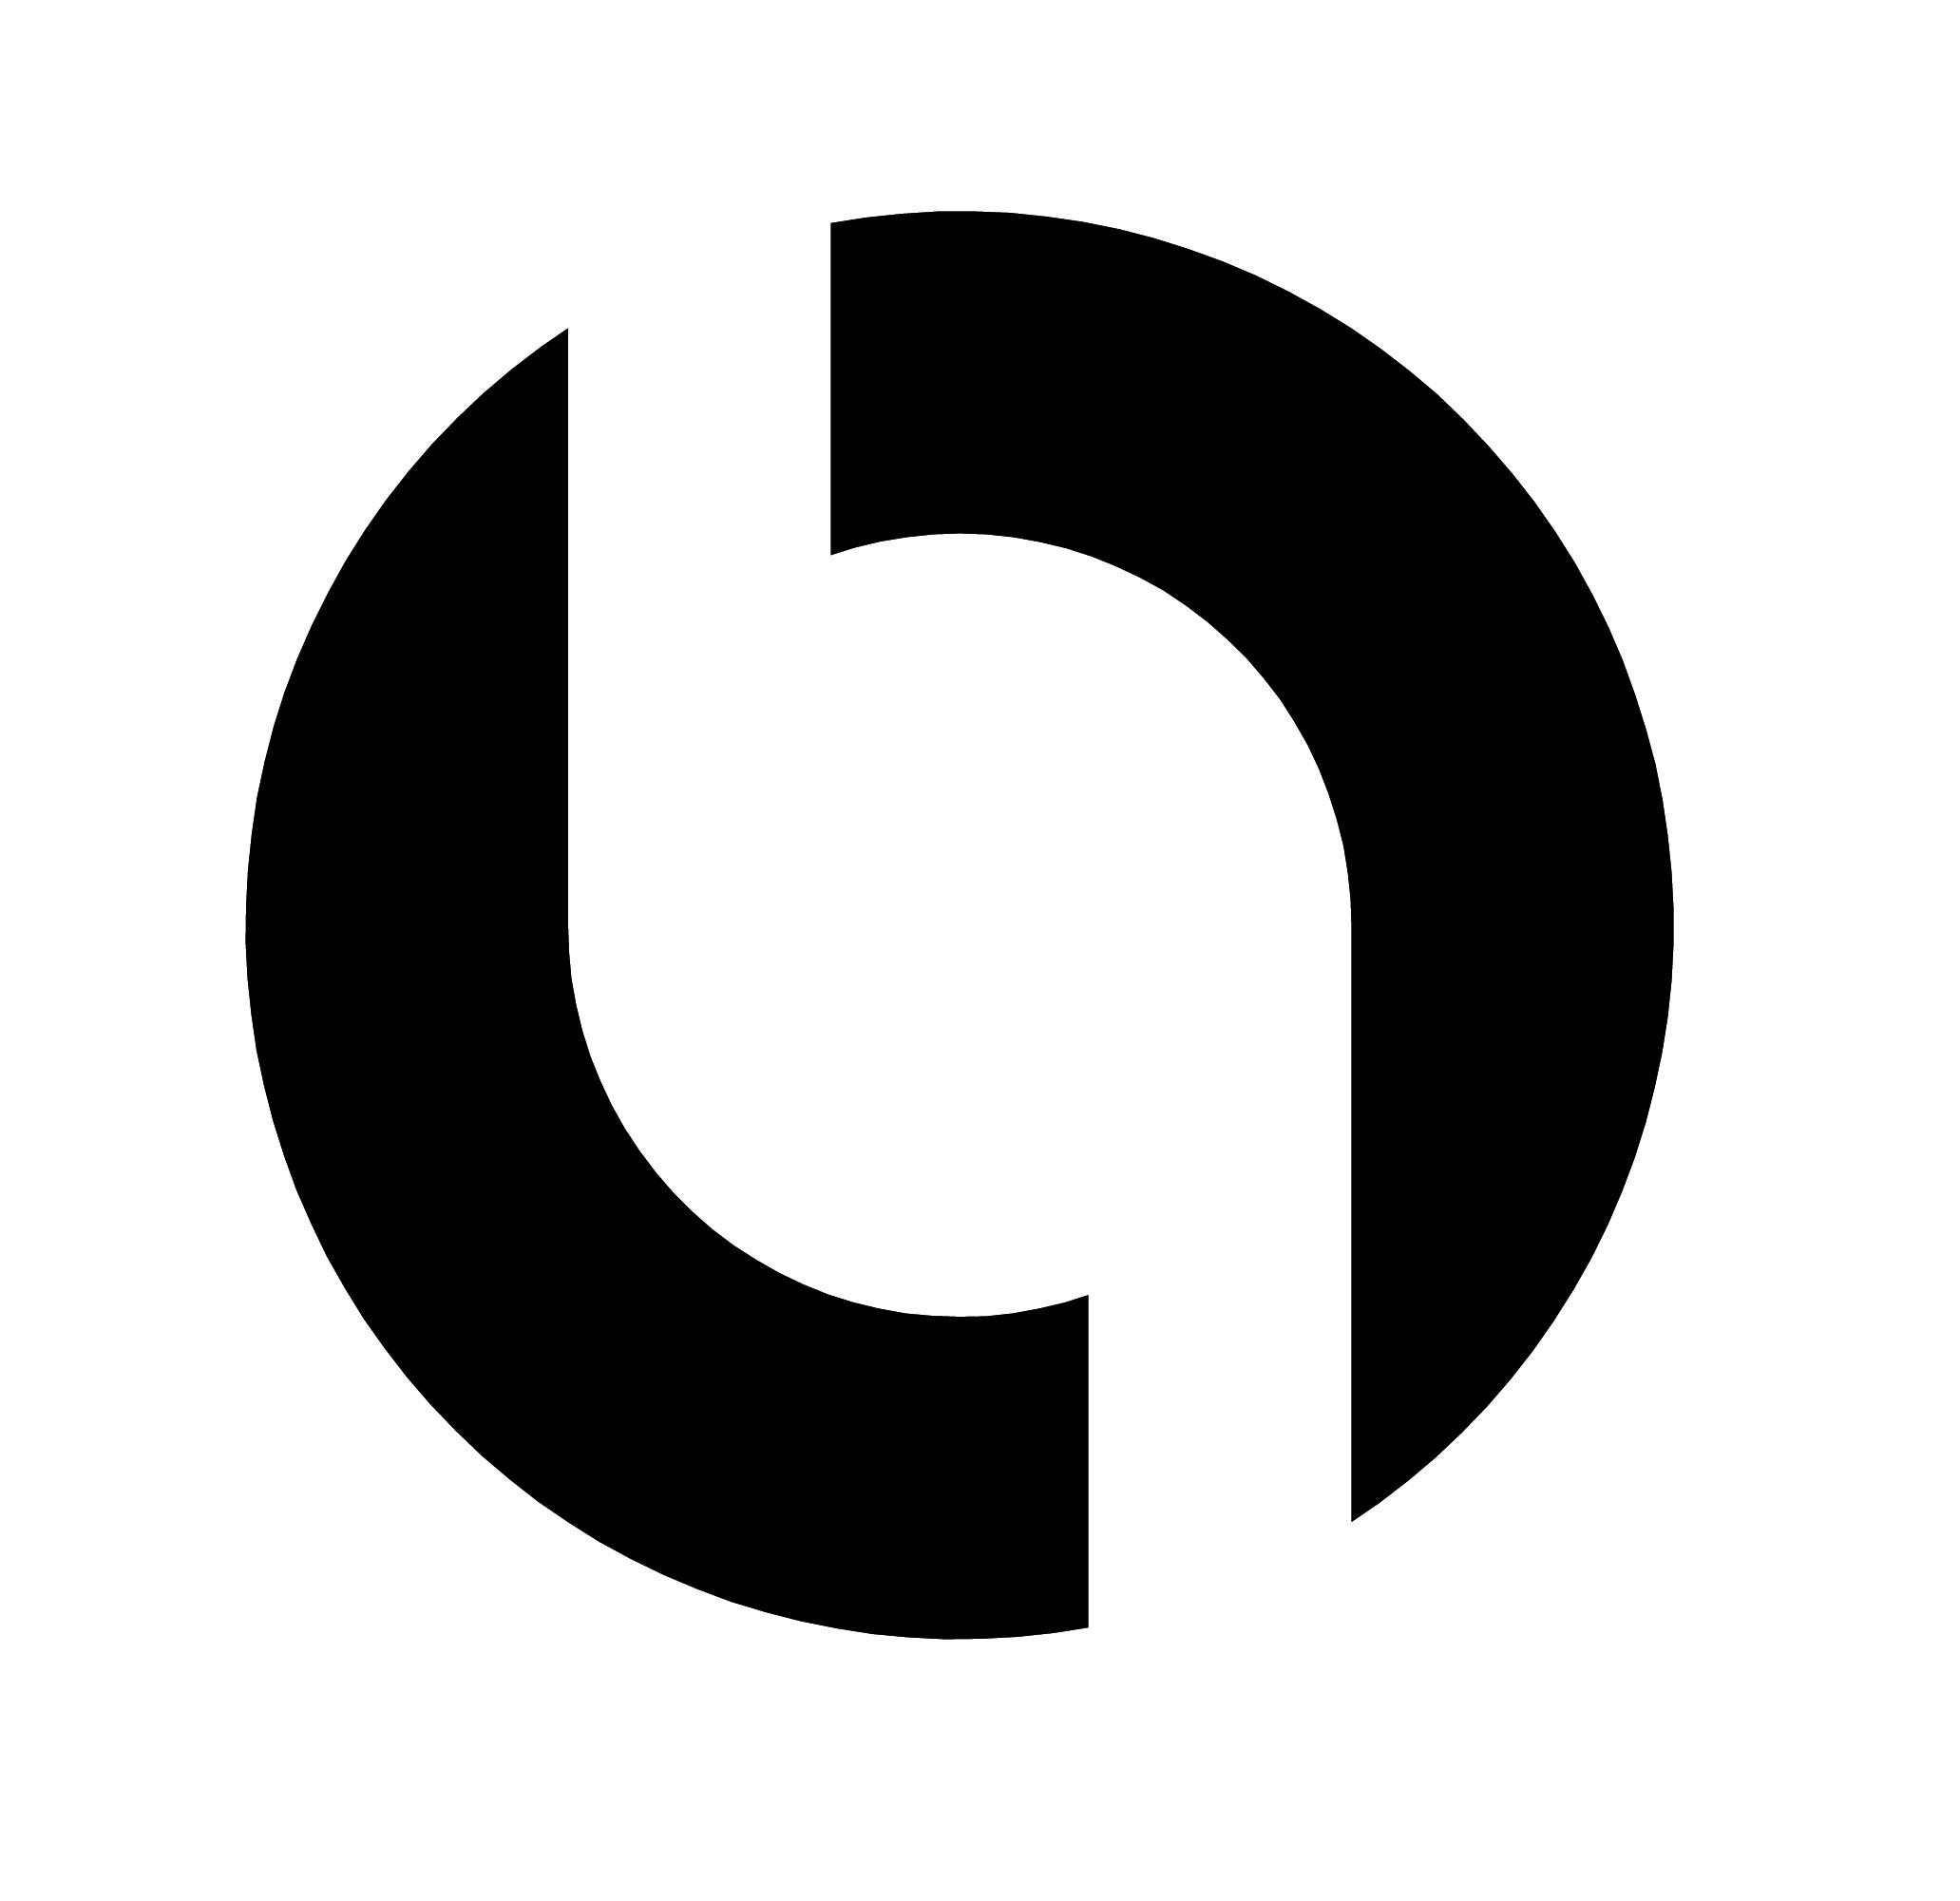 b1design